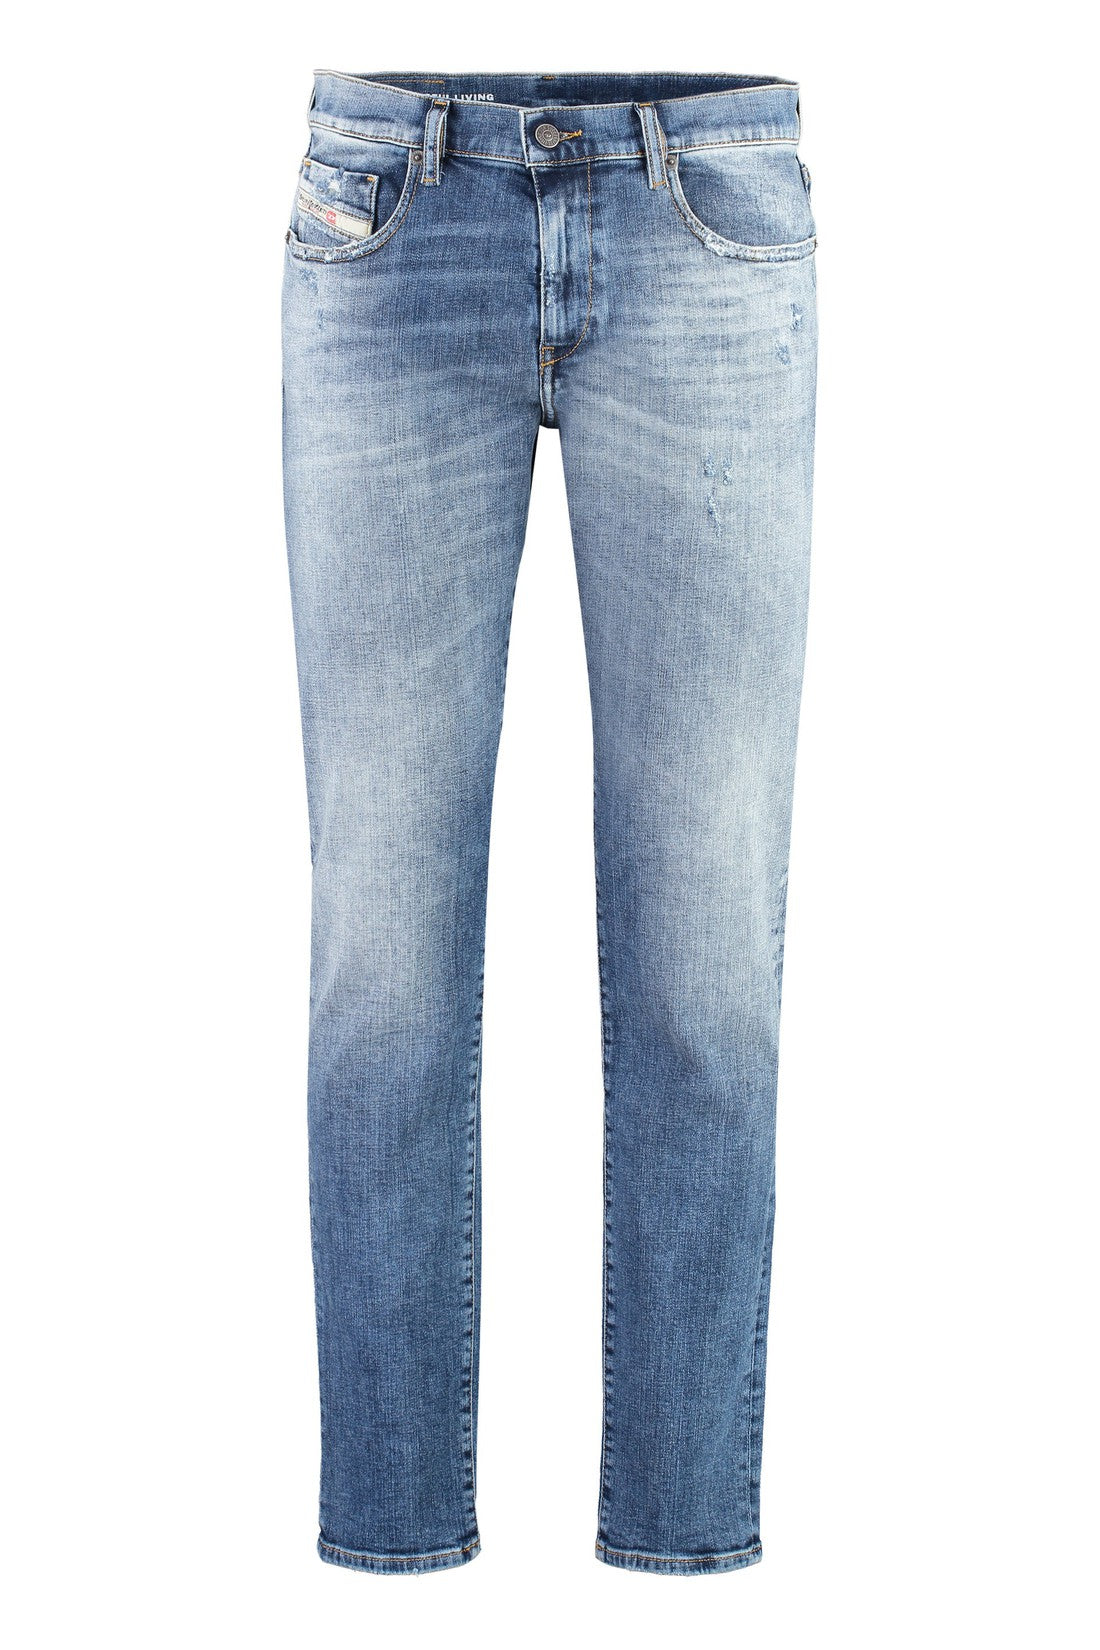 DIESEL-OUTLET-SALE-2019 D-Struktslim fit jeans-ARCHIVIST